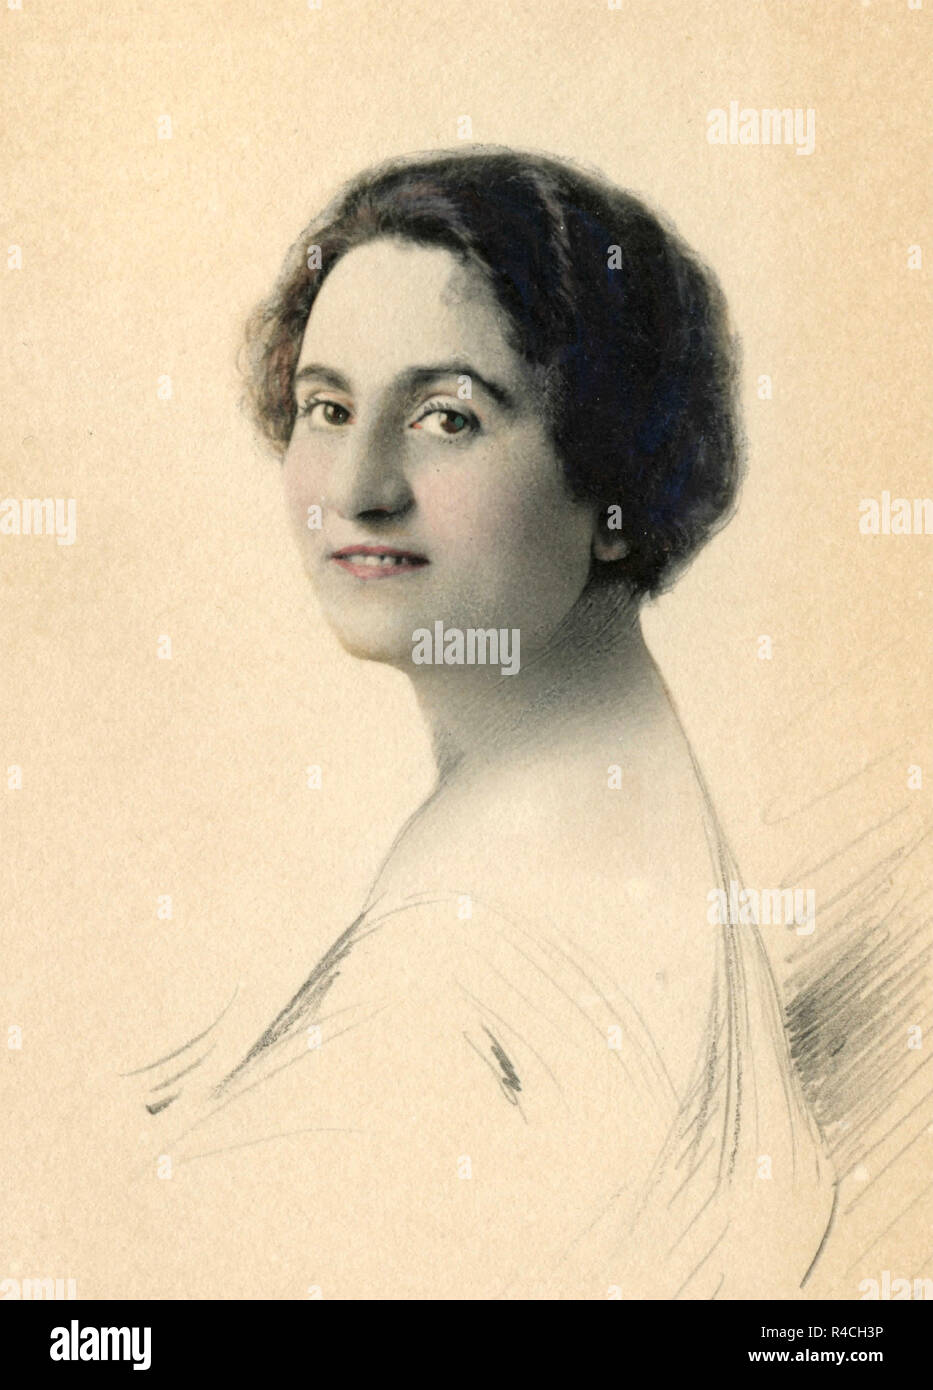 Coloreado a mano viejo retrato de una mujer, 1910s Foto de stock